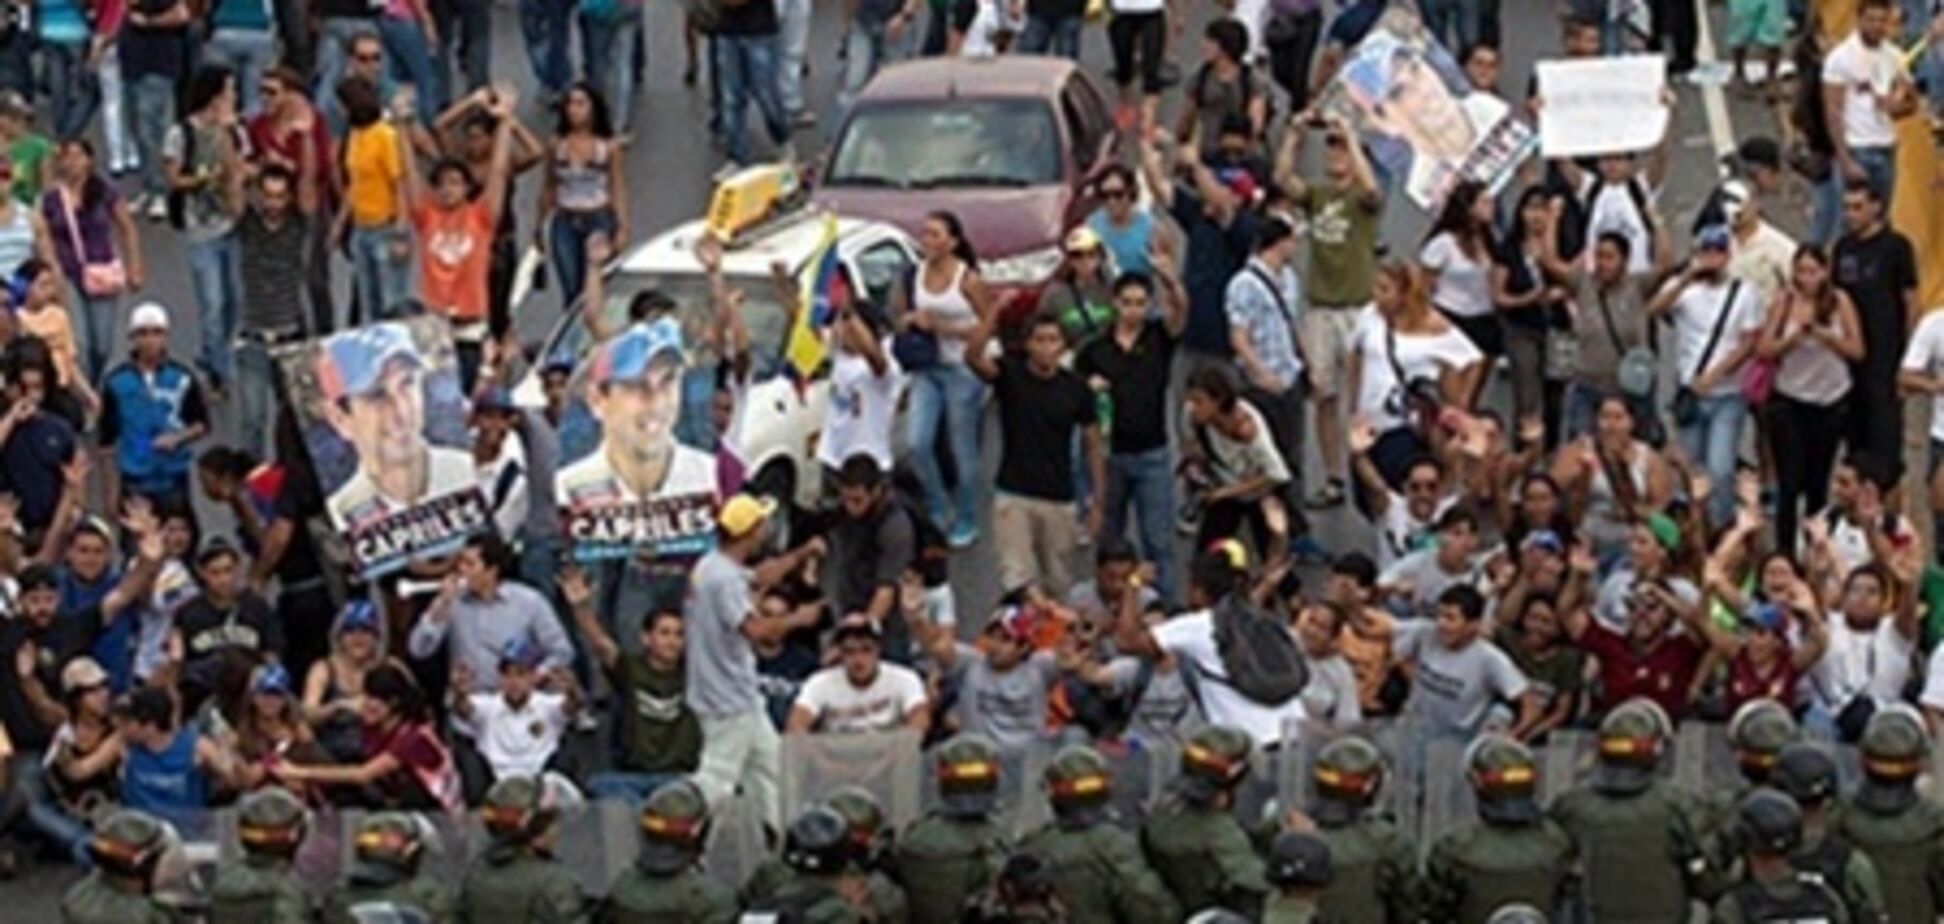 Режиссера из США арестовали в Венесуэле за организацию беспорядков